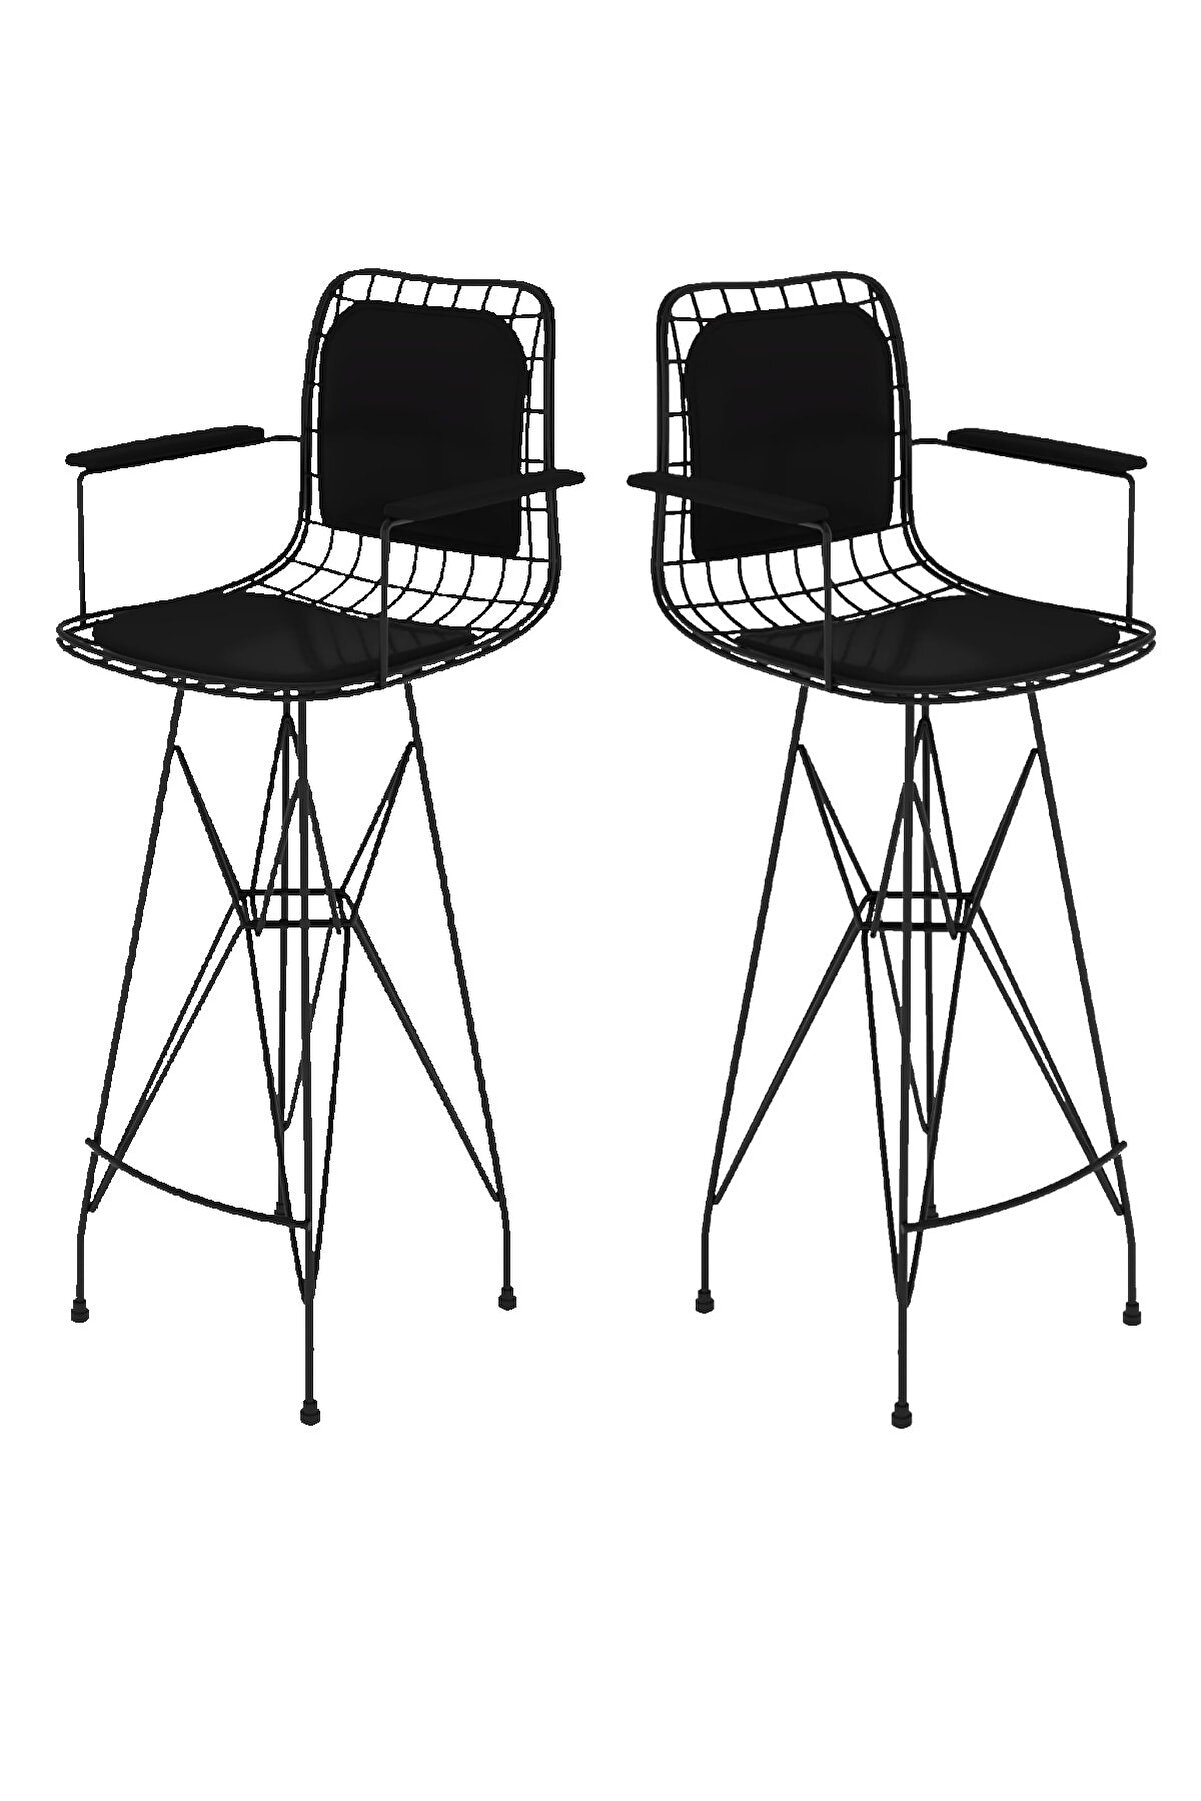 Kenzlife Knsz kafes tel bar sandalyesi 2 li zengin syhsyh kolçaklı sırt minderli ofis cafe bahçe mutfak